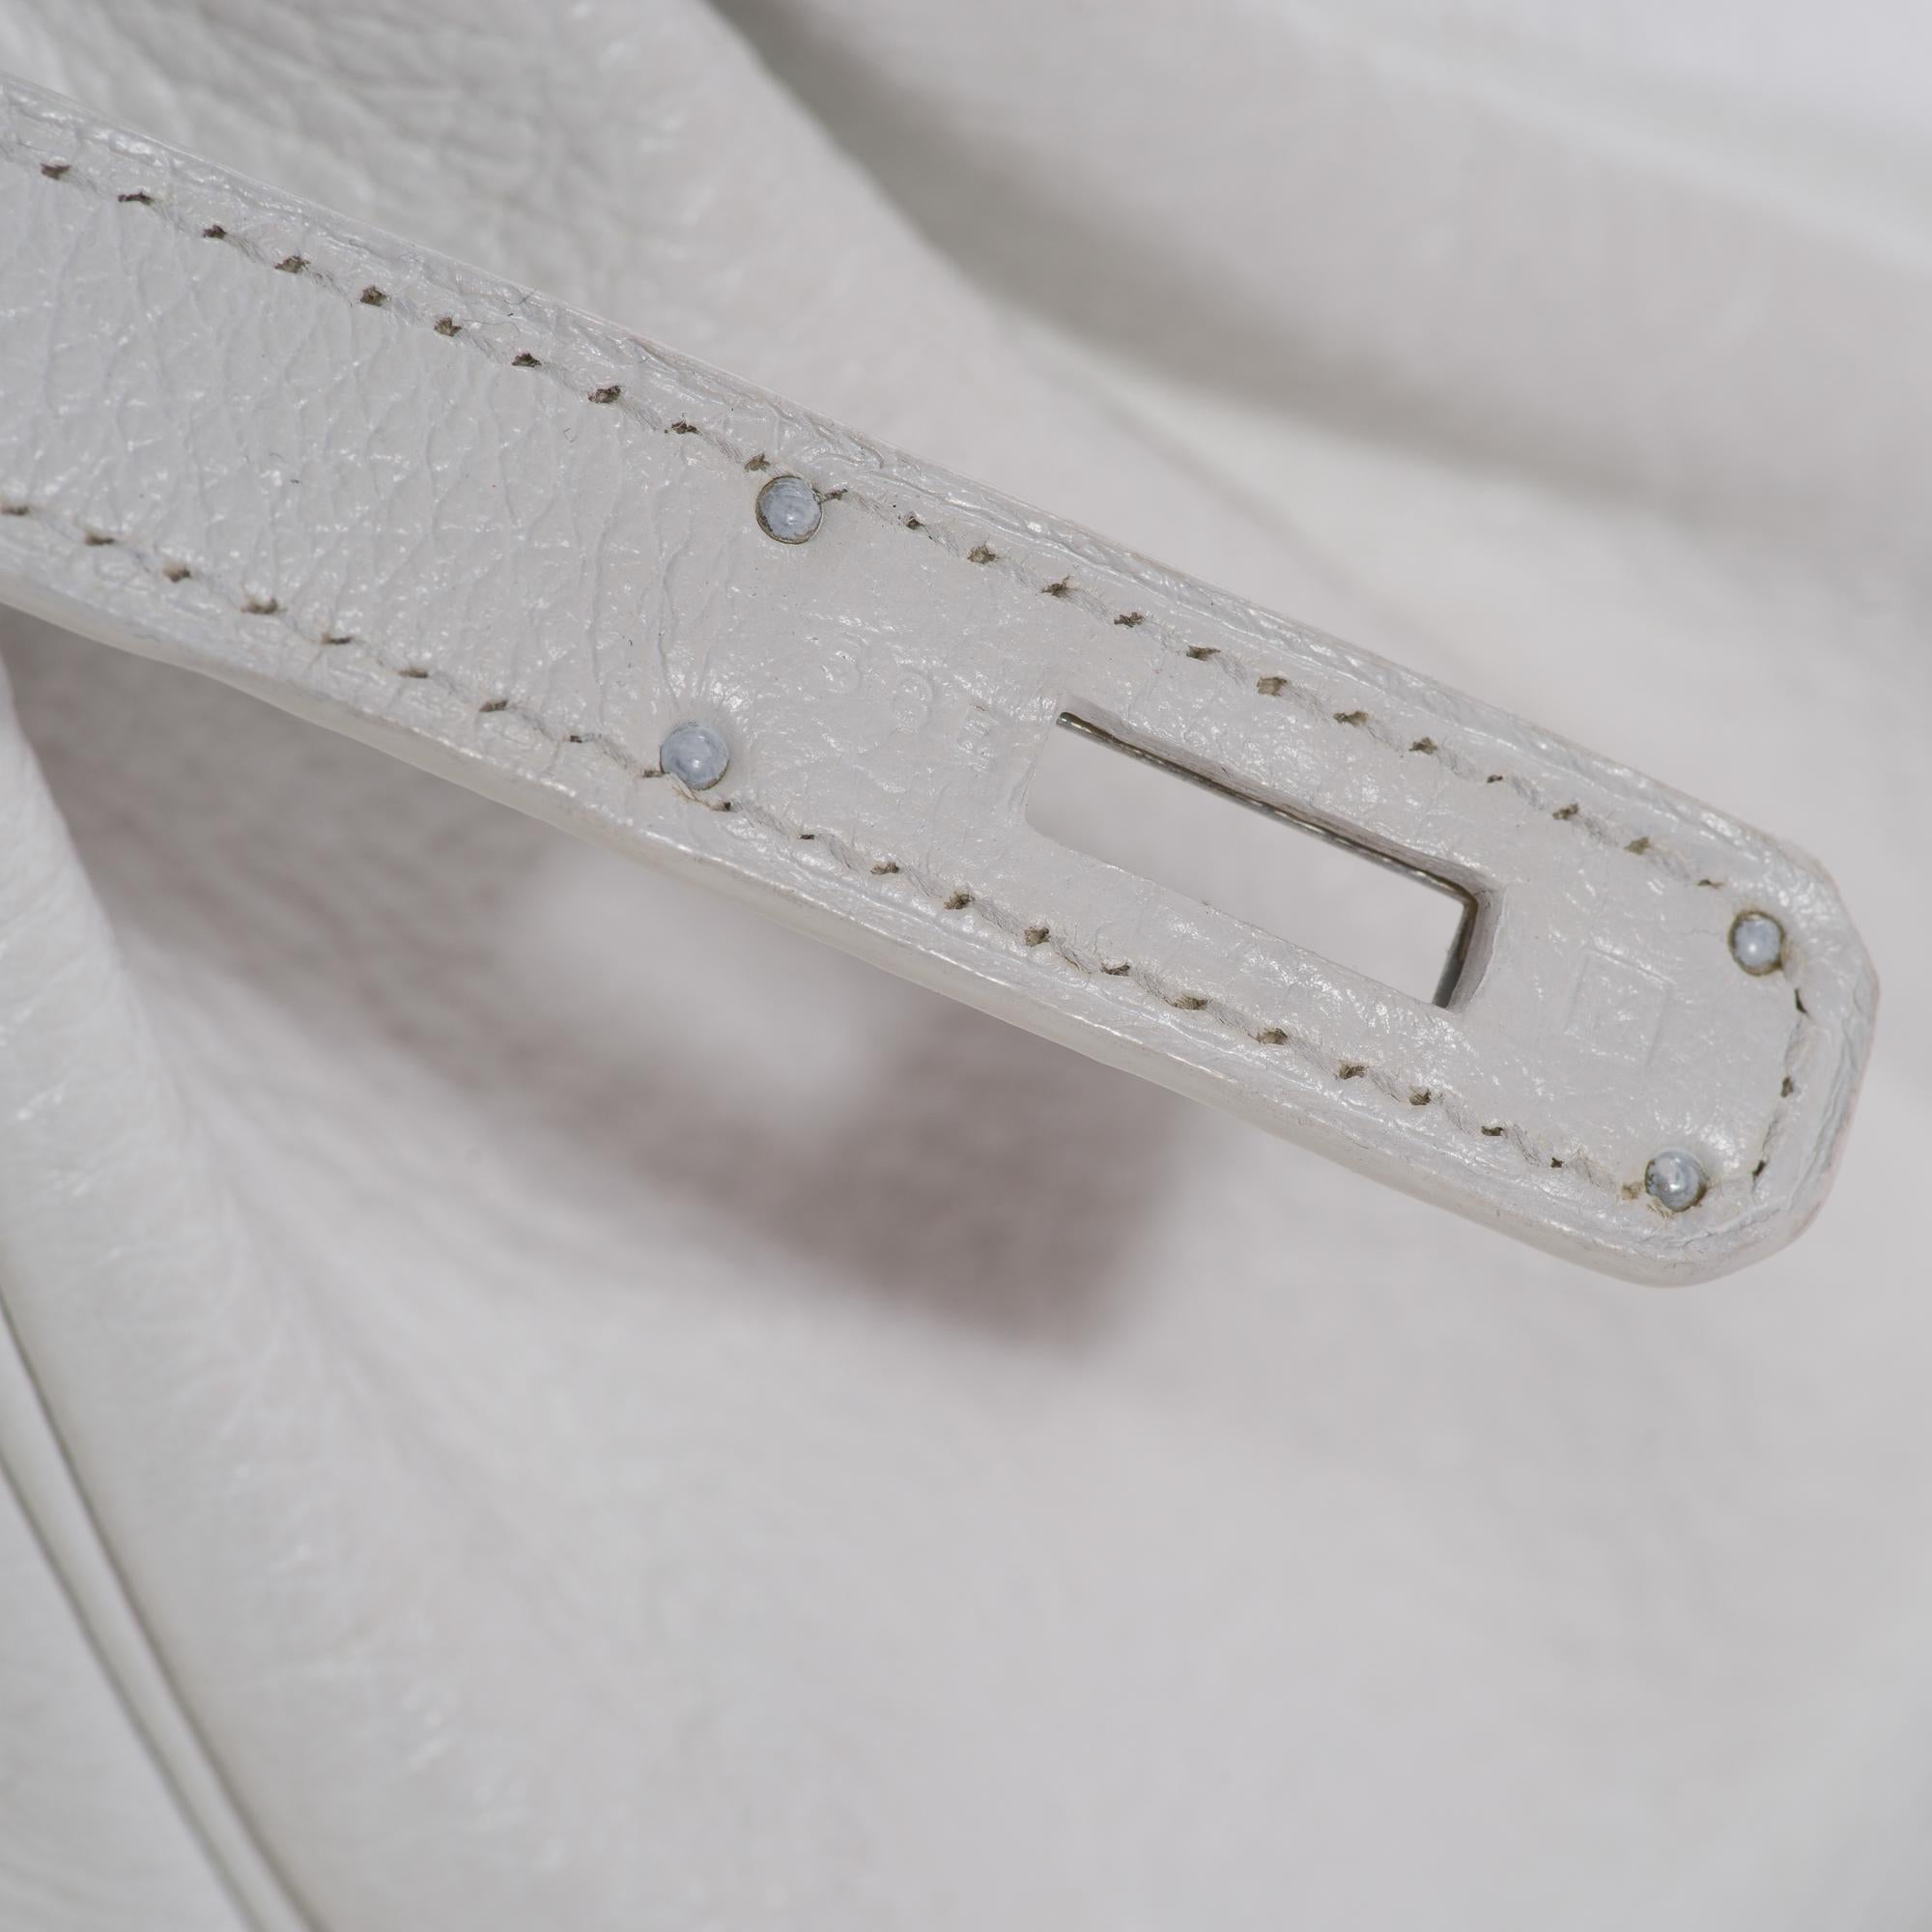 Hermes Birkin 30 in white Togo leather, Palladium Hardware, excellent condition! 3